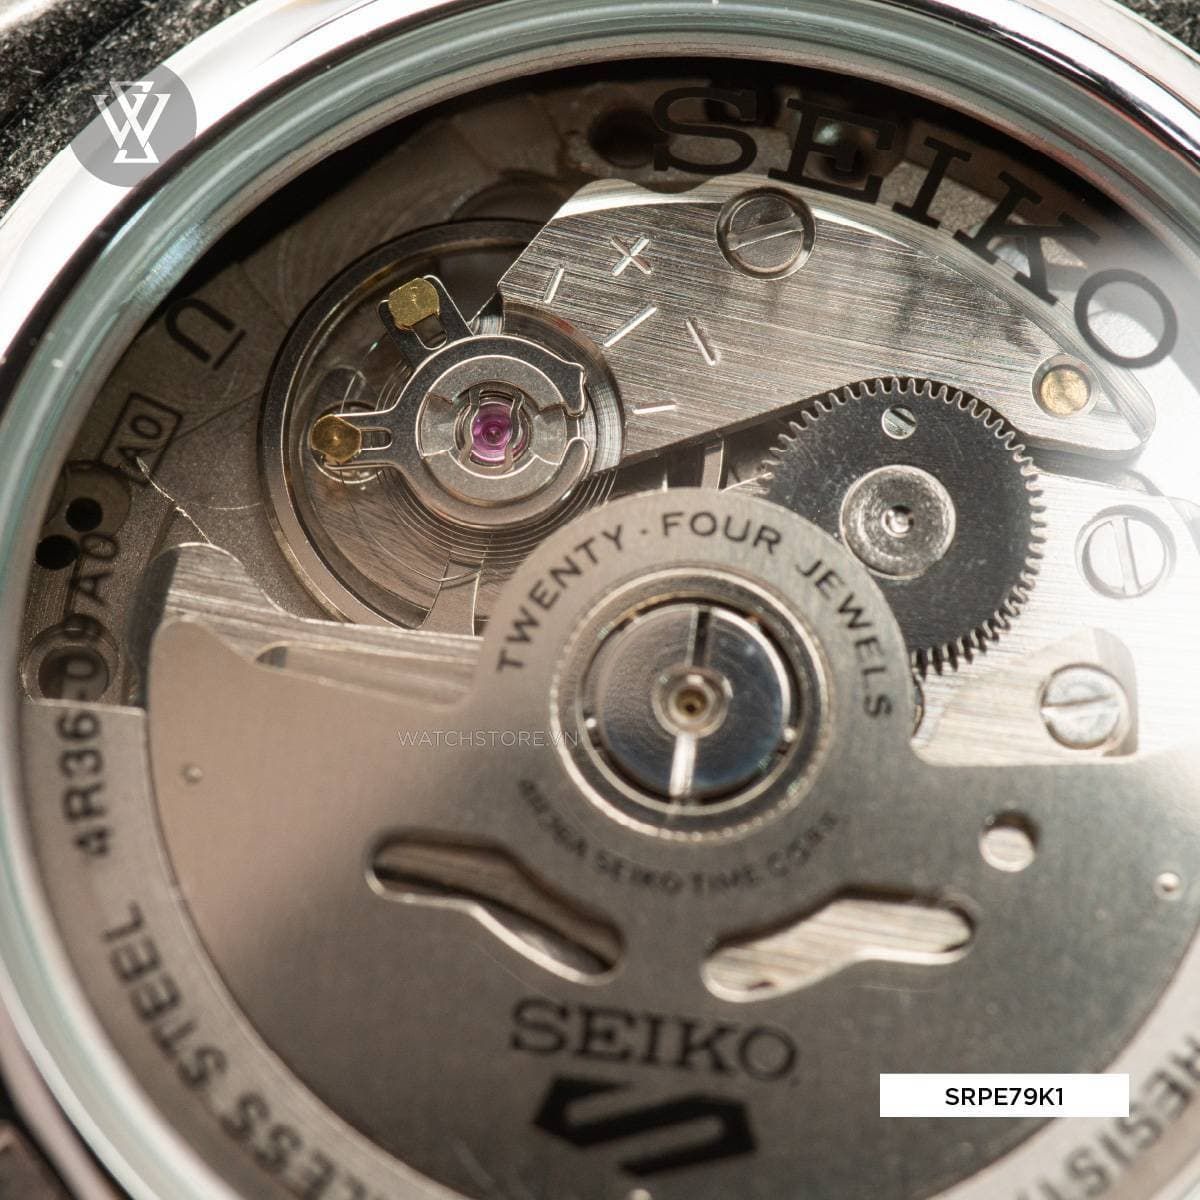 Seiko 4r36 - Mẫu đồng hồ cơ được ưa chuộng nhất trên thị trường - Ảnh 3